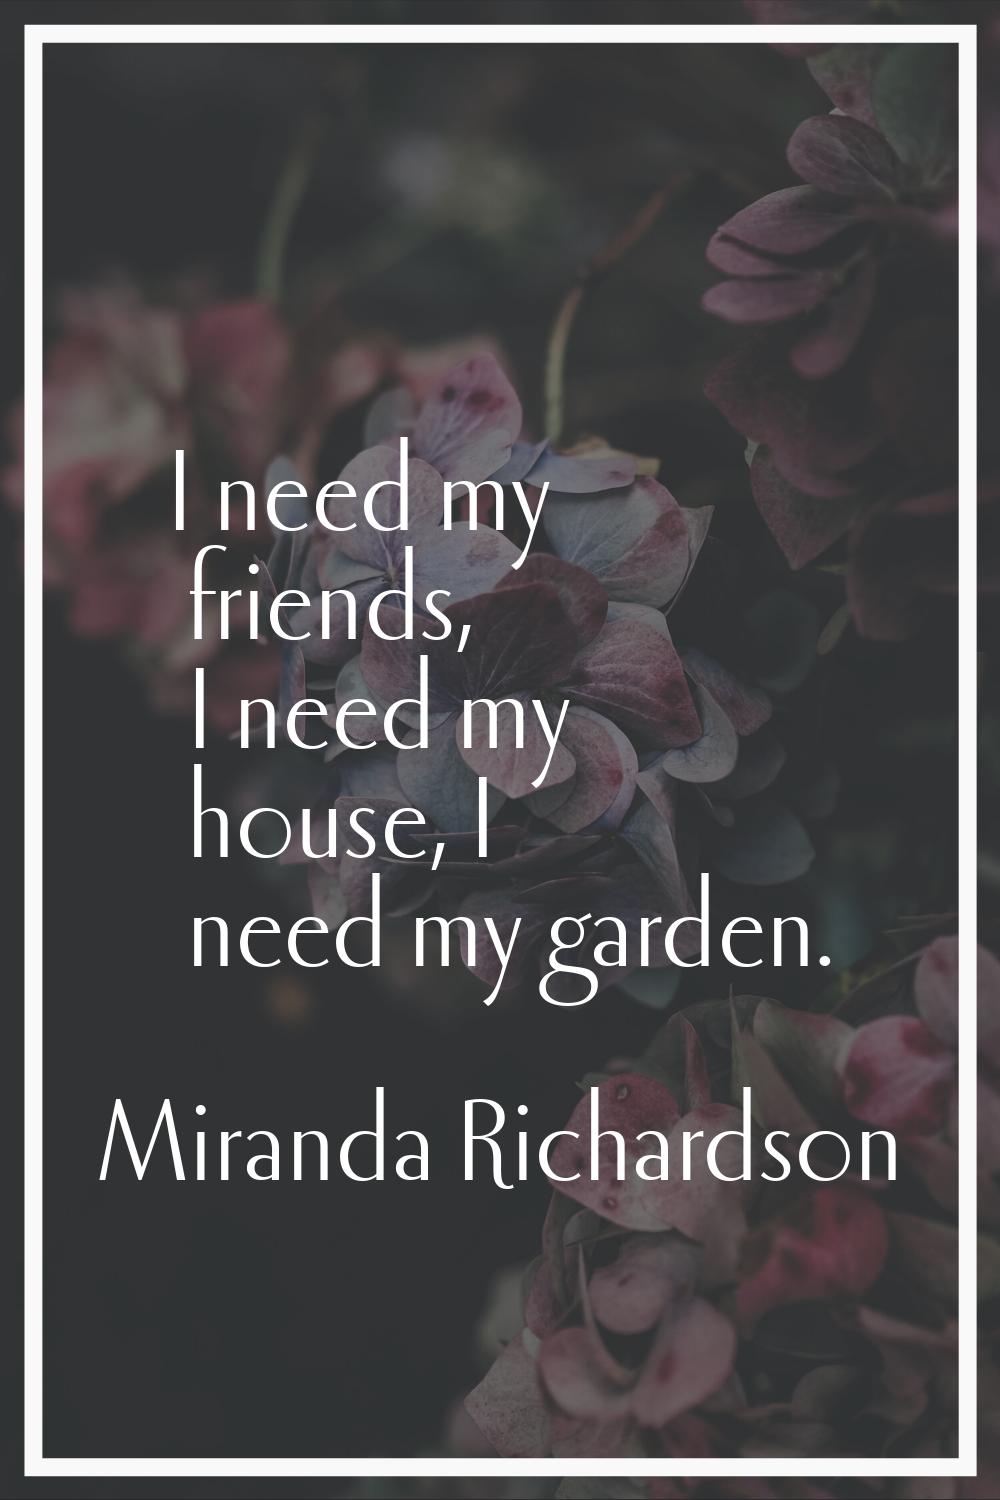 I need my friends, I need my house, I need my garden.